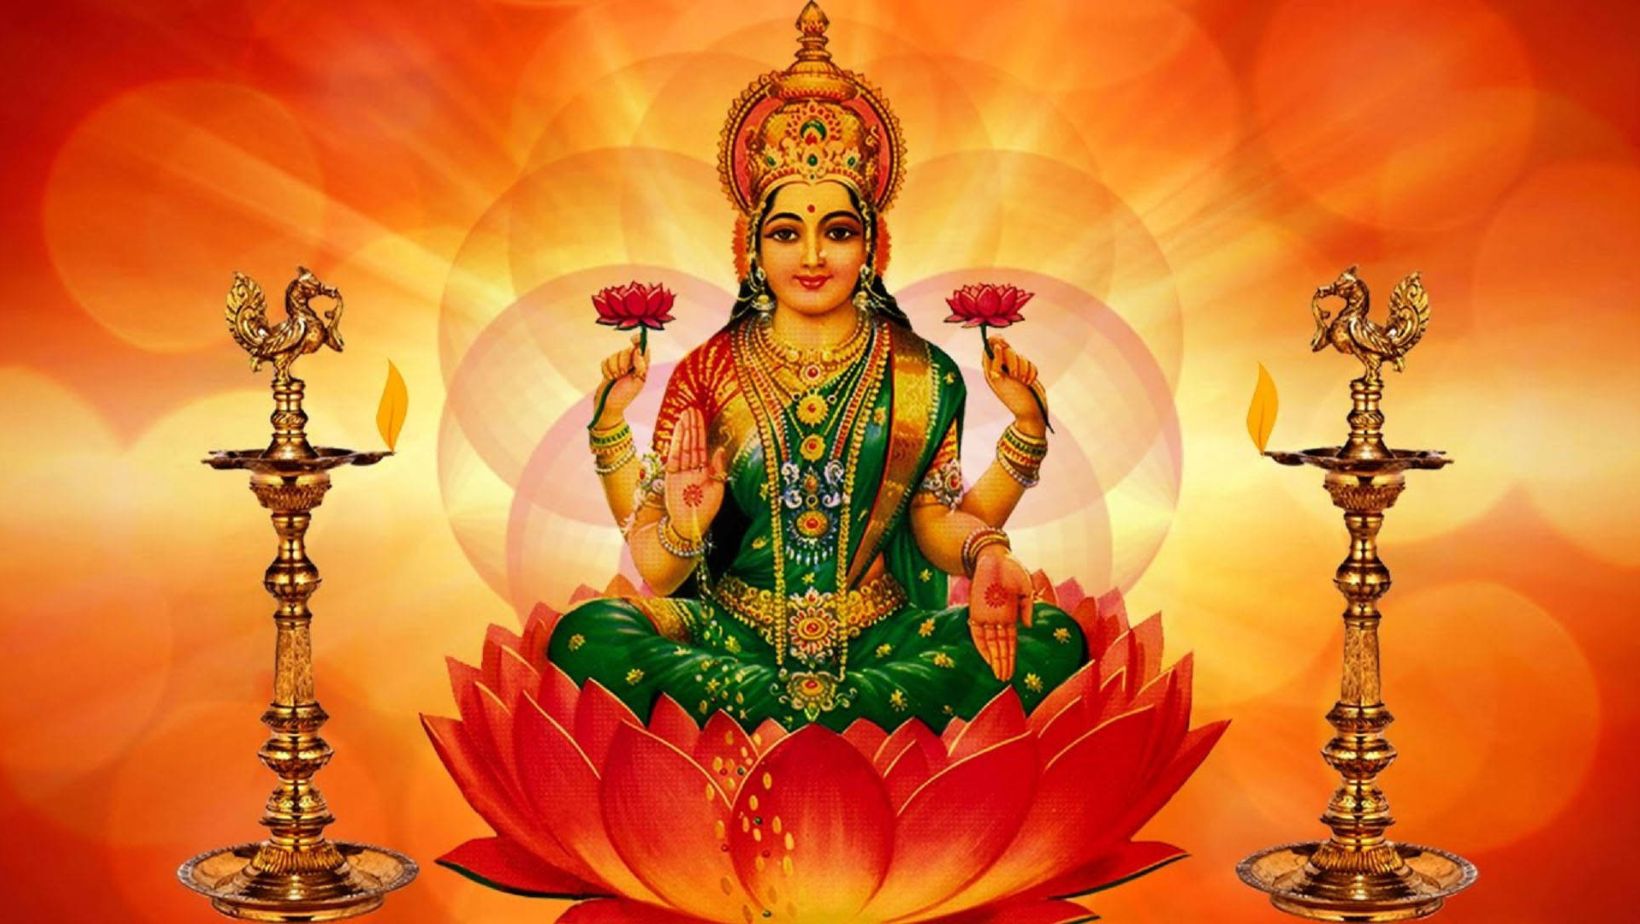 lakshmi devi images hd 1080p download